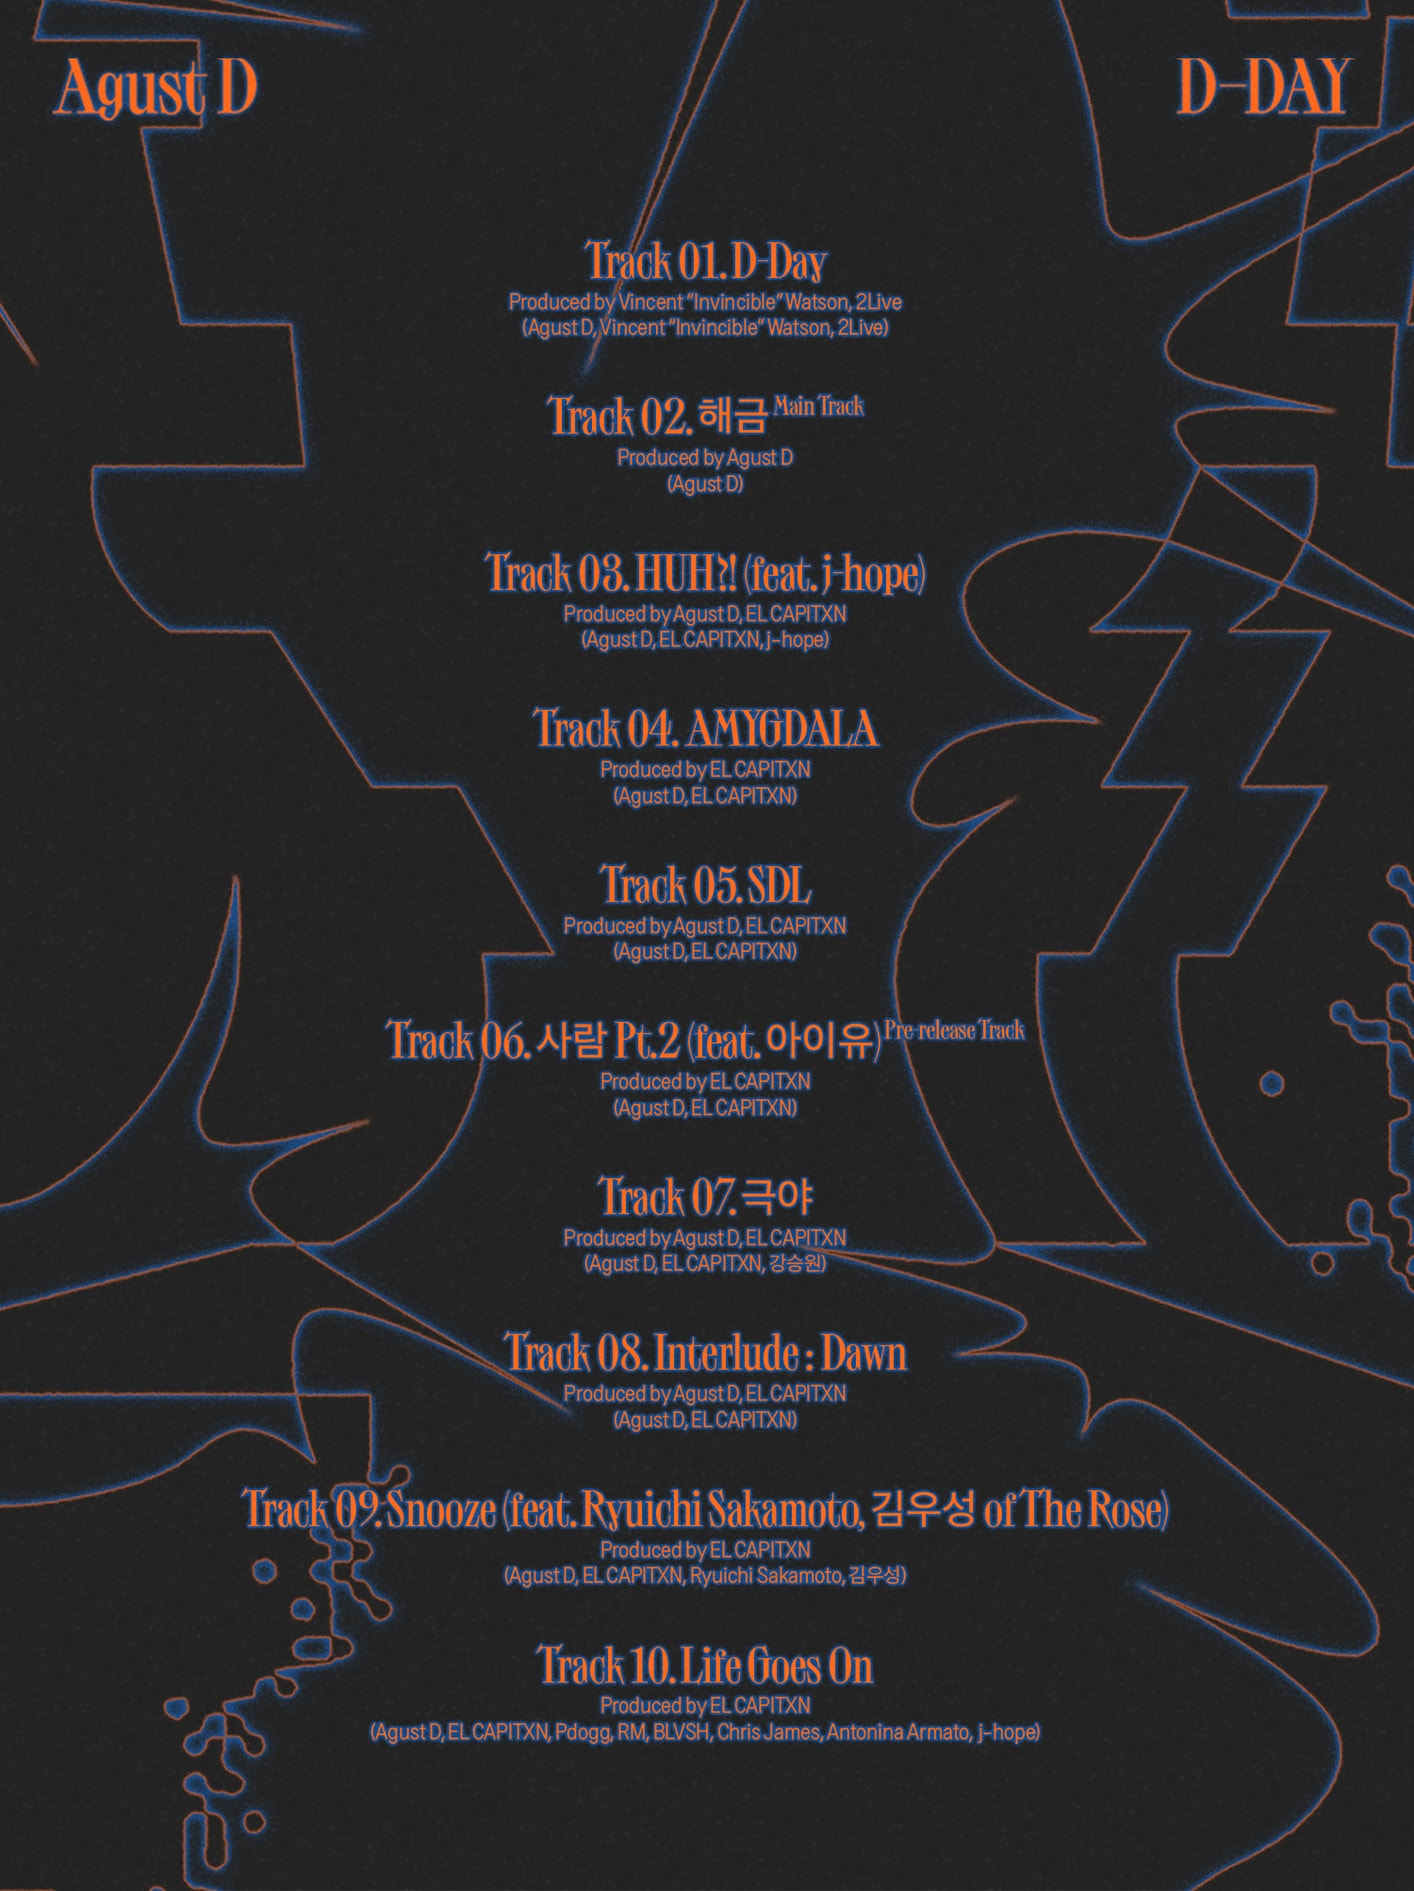 Agust D 'D-DAY' Tracklist